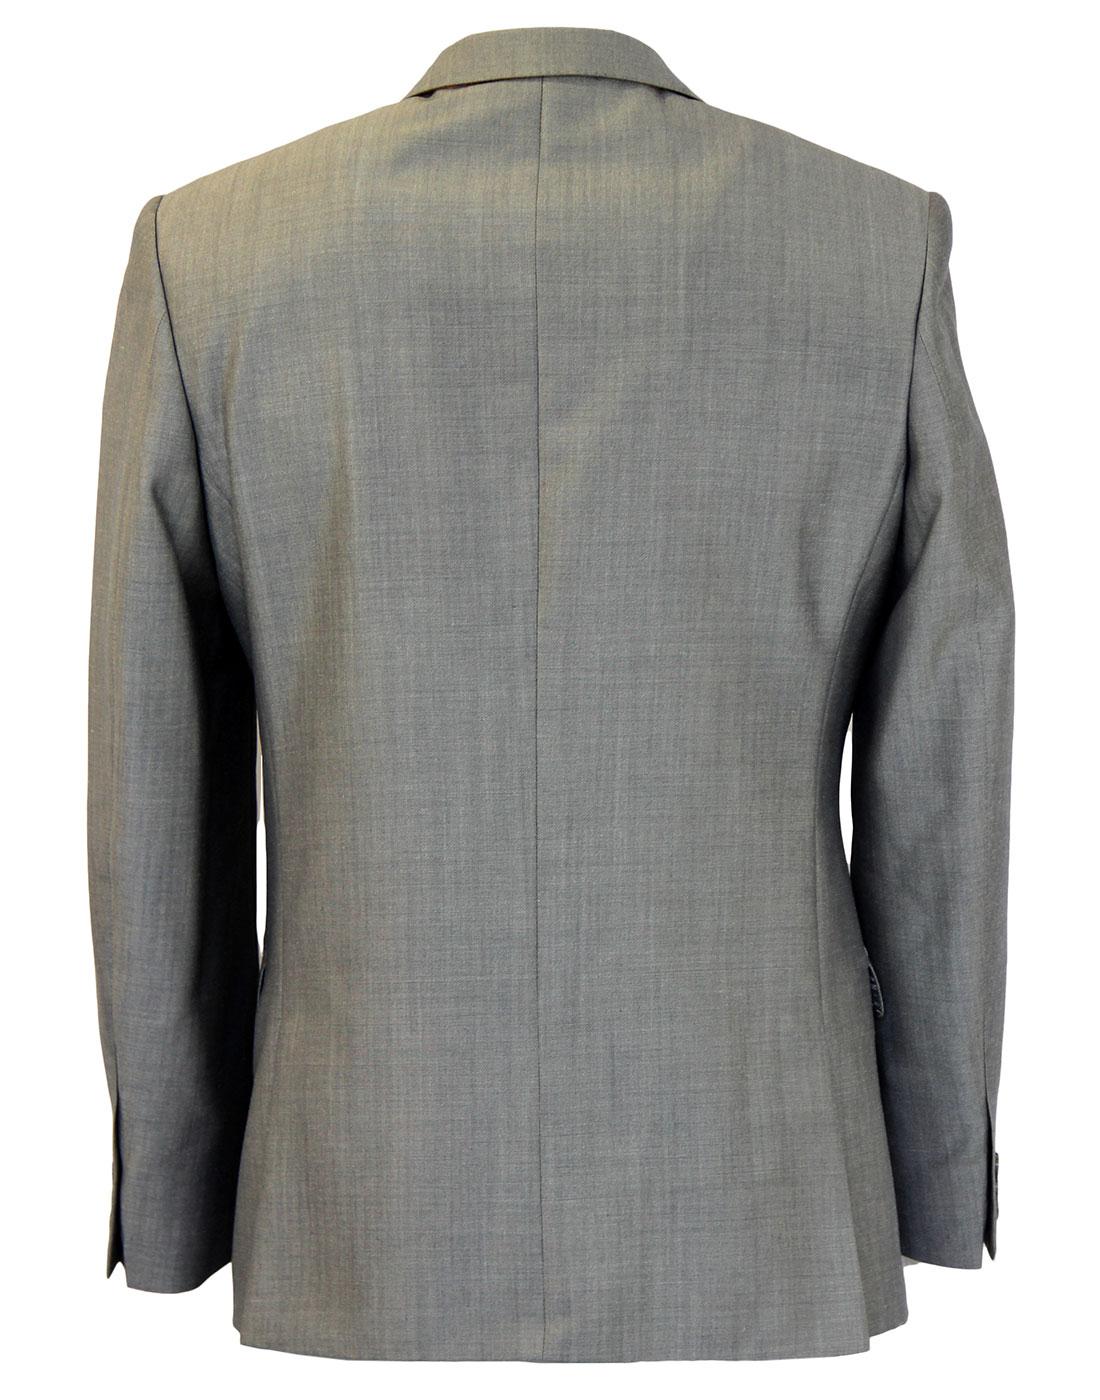 Retro 60s Mod Mohair Blend 2 Button Suit Jacket S